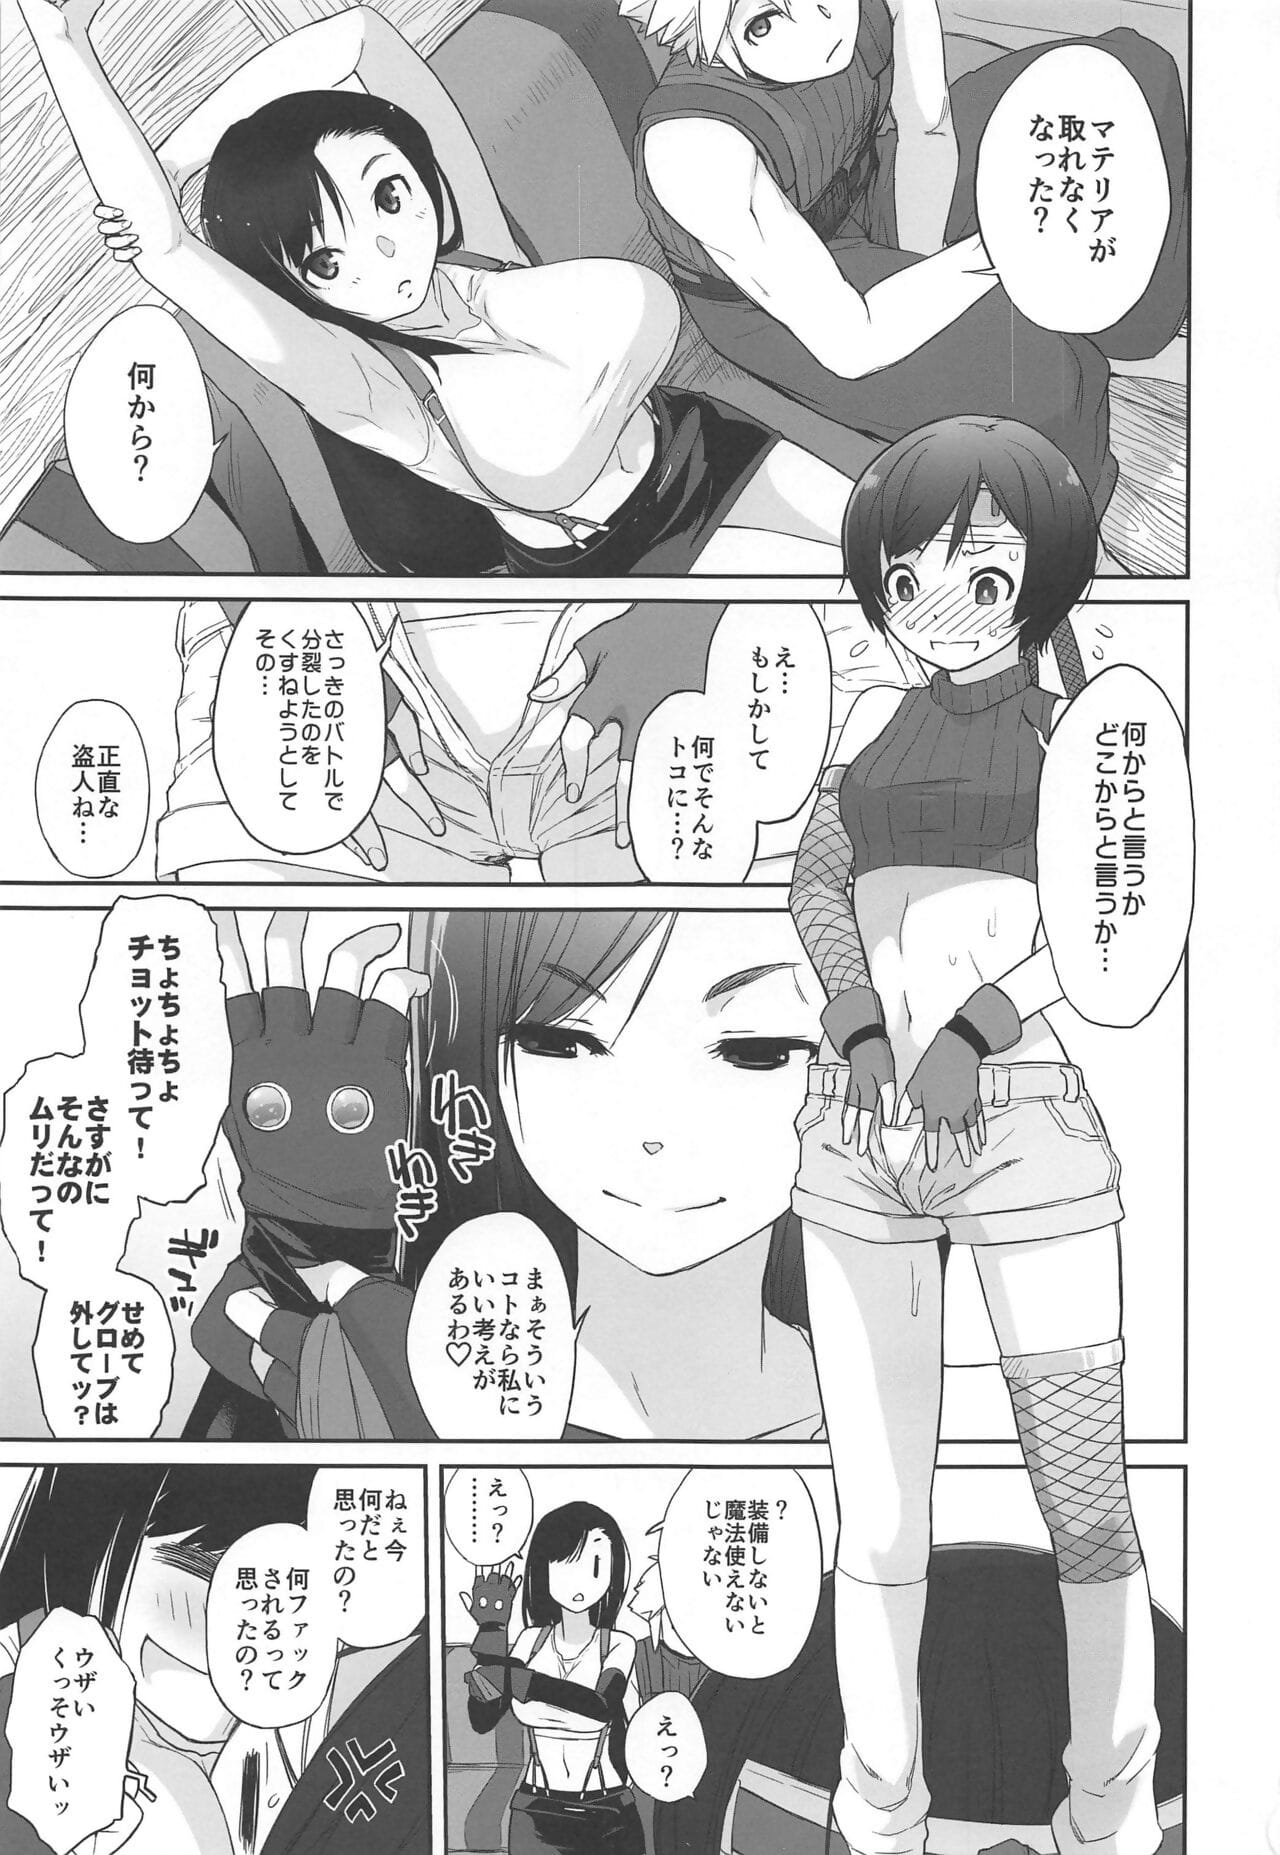 materia X Mädchen #2 tifa keine minimum daisakusen! page 1